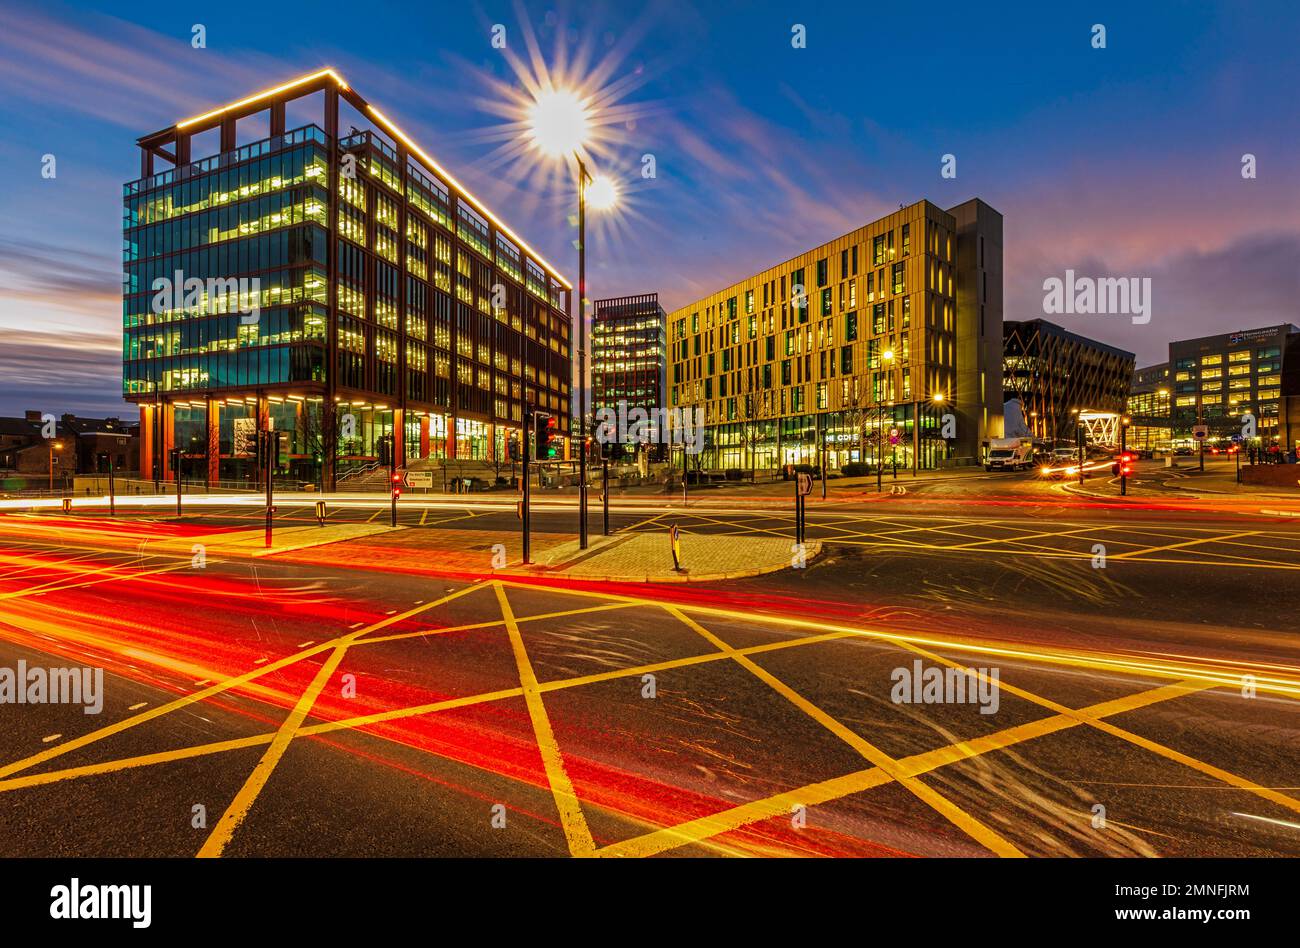 Vue sur le site de Newcastle Helix au crépuscule, Newcastle upon Tyne, Tyne and Wear, Angleterre, Royaume-Uni Banque D'Images